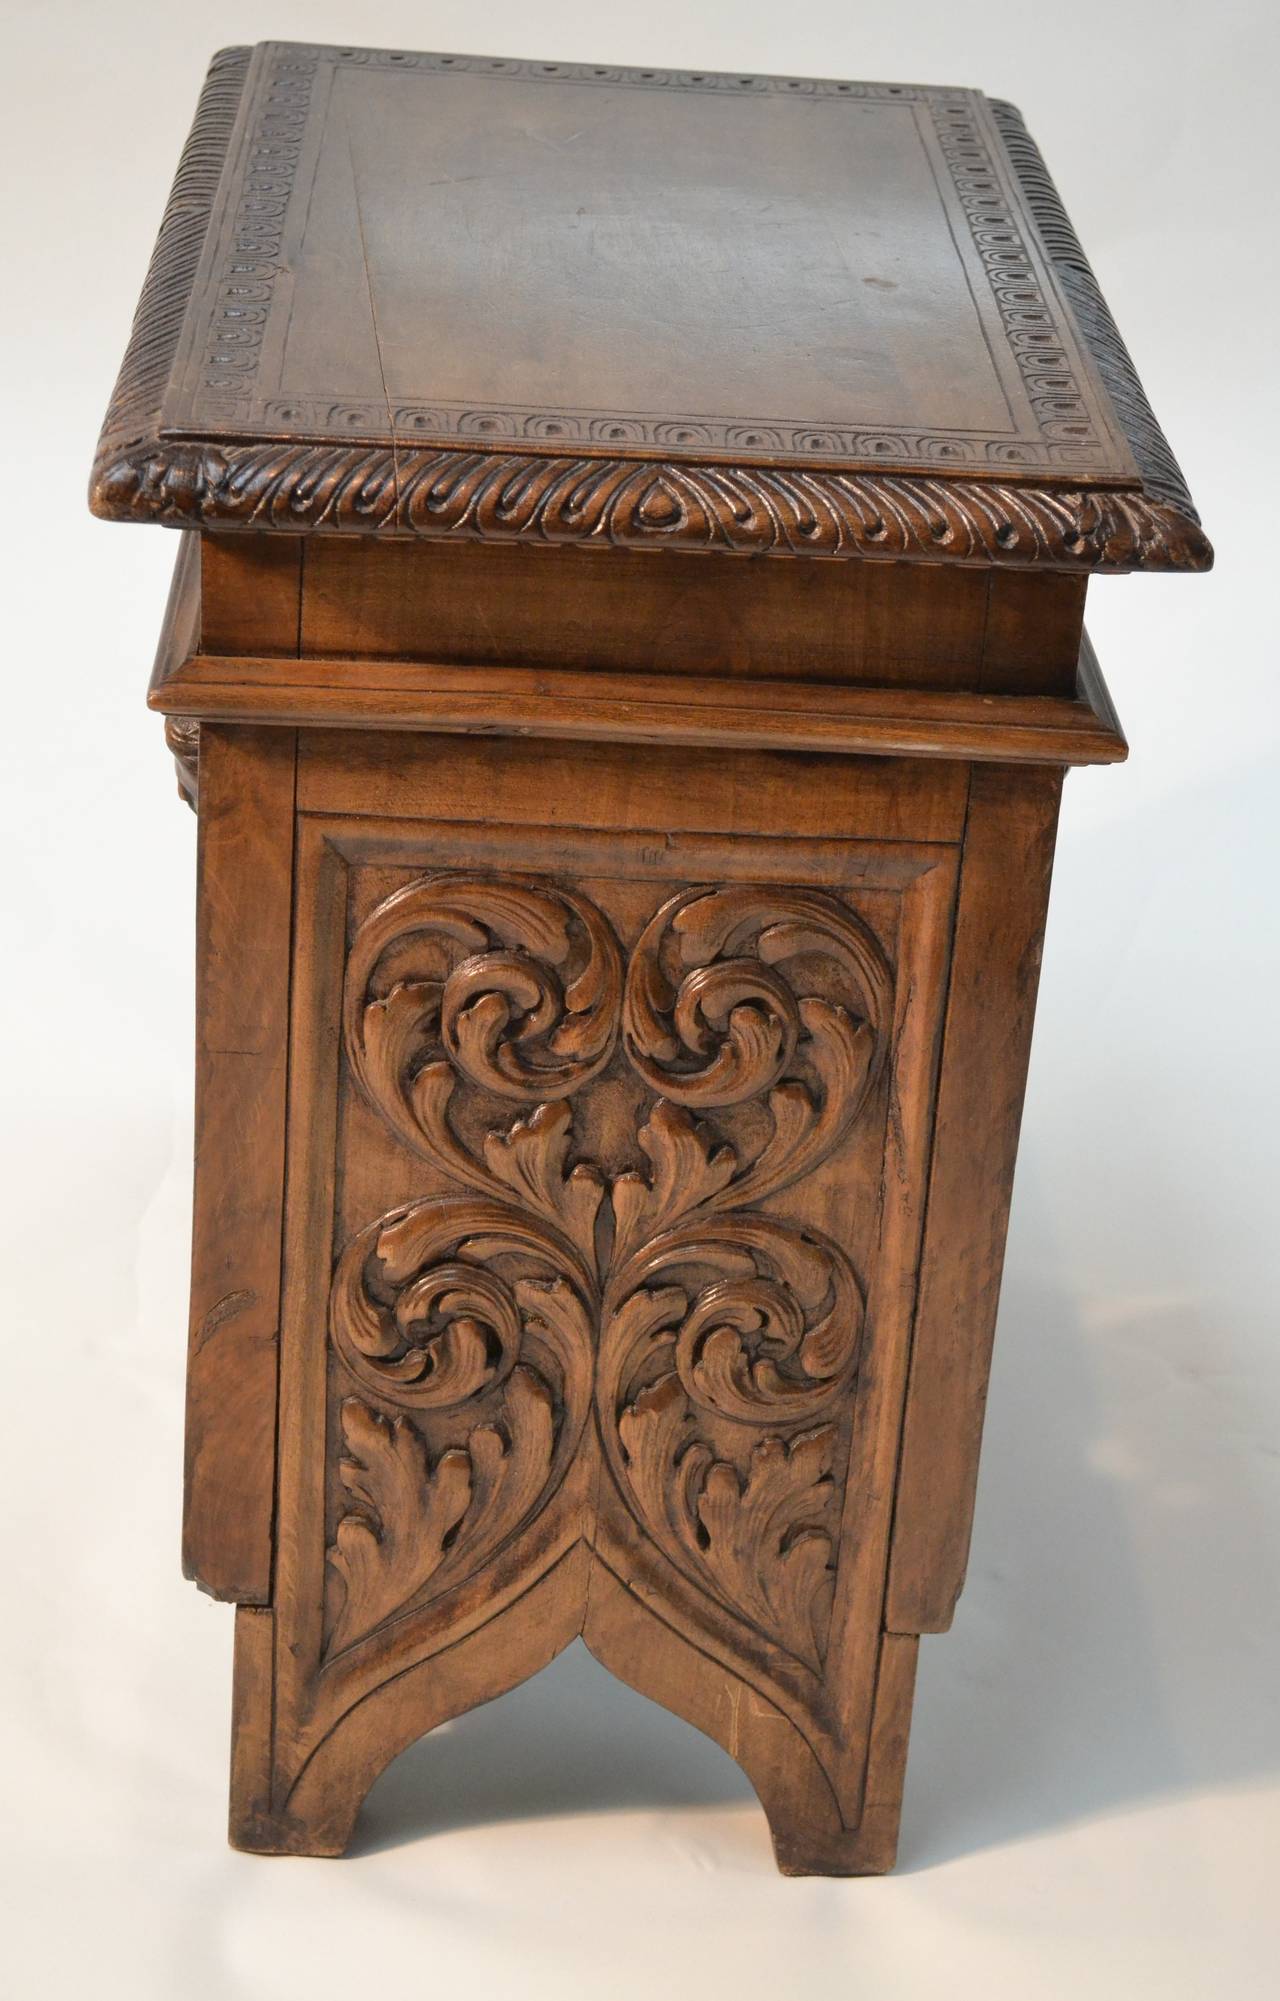 Renaissance Revival Renaissance revival carved stool/table For Sale